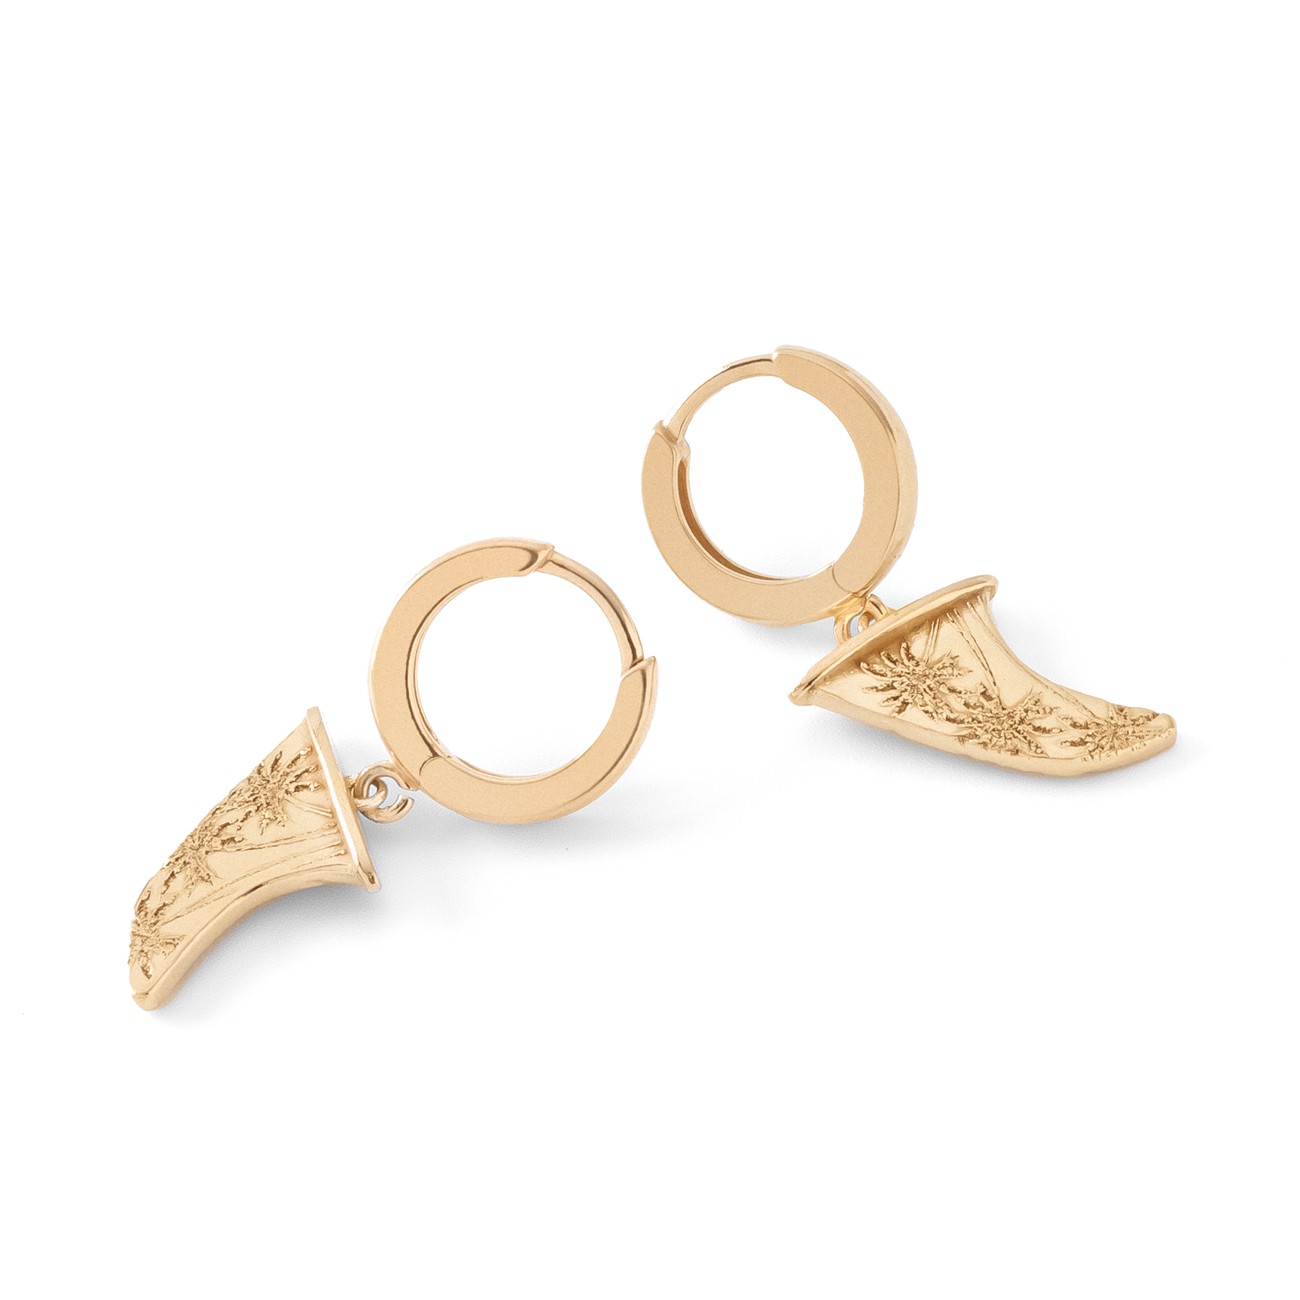 Giorre Woman's Earrings 38236